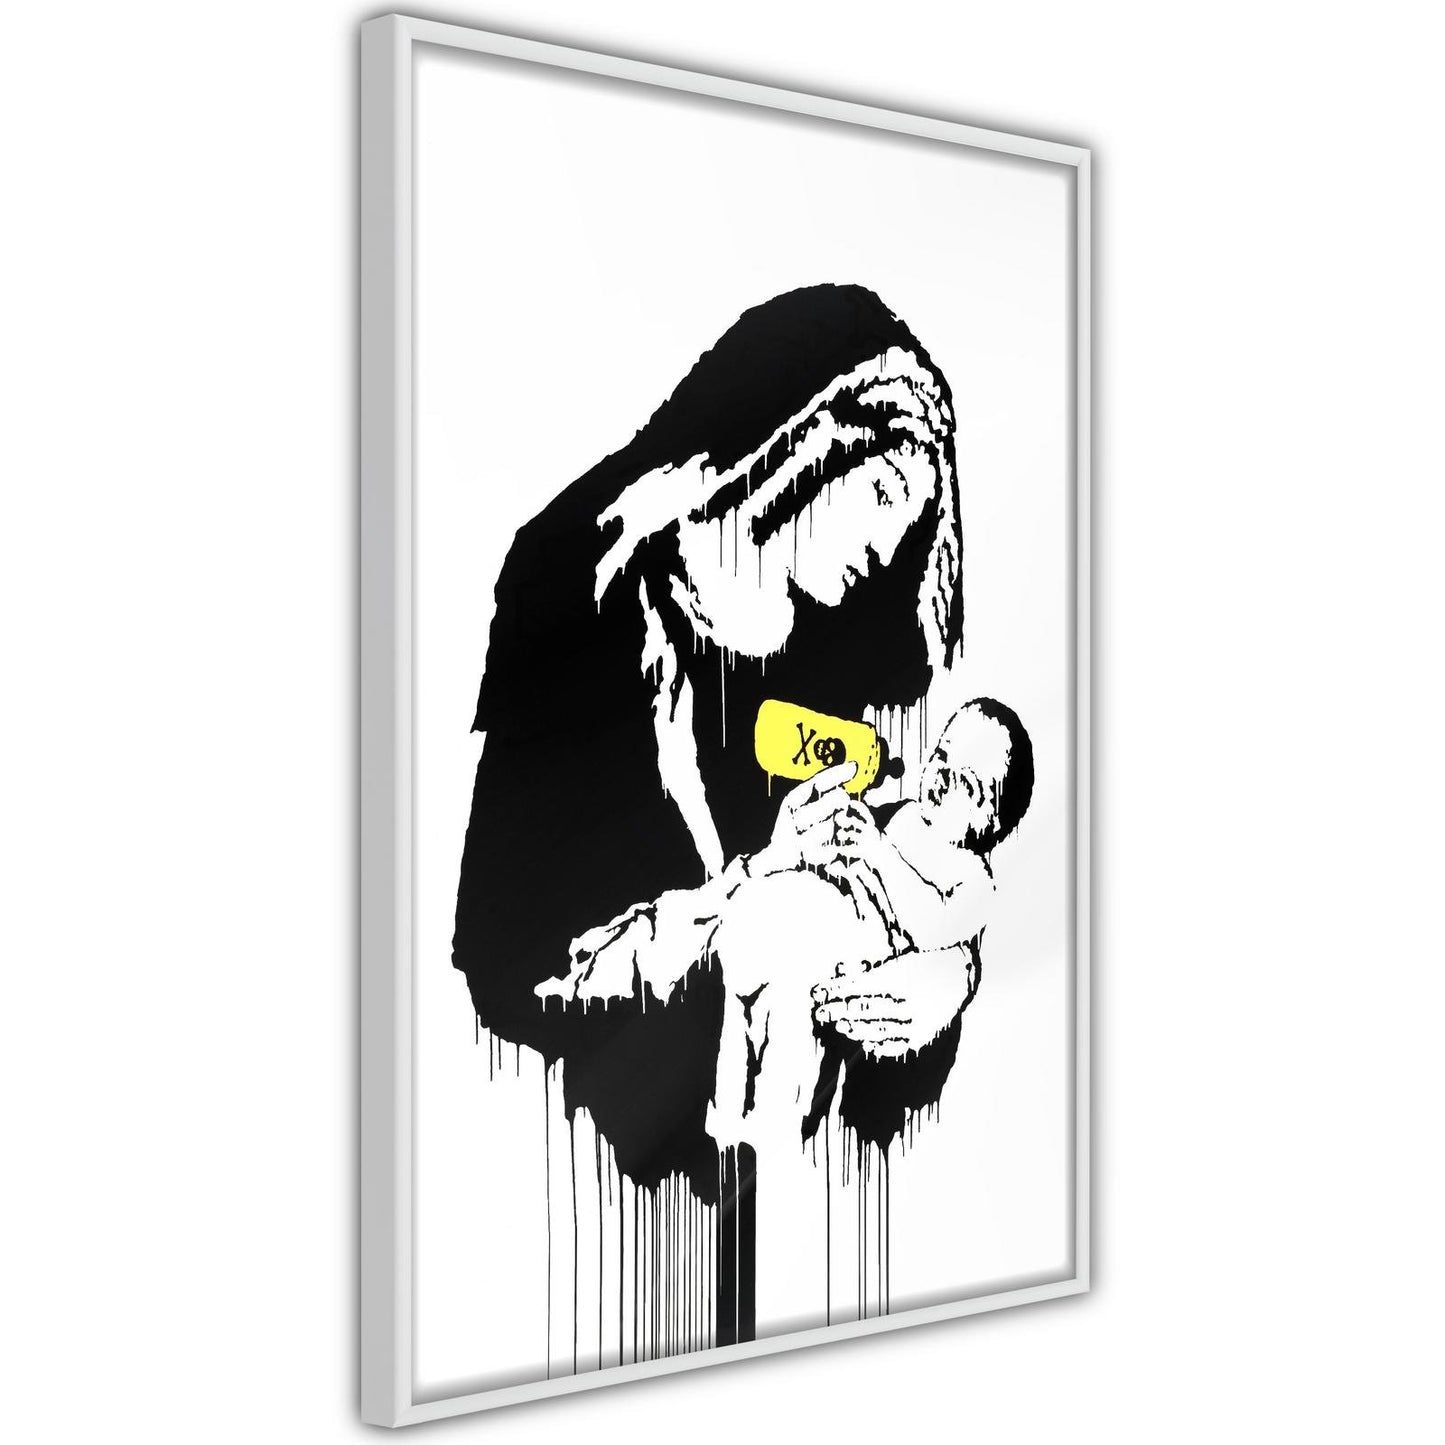 Banksy: Toxic Mary